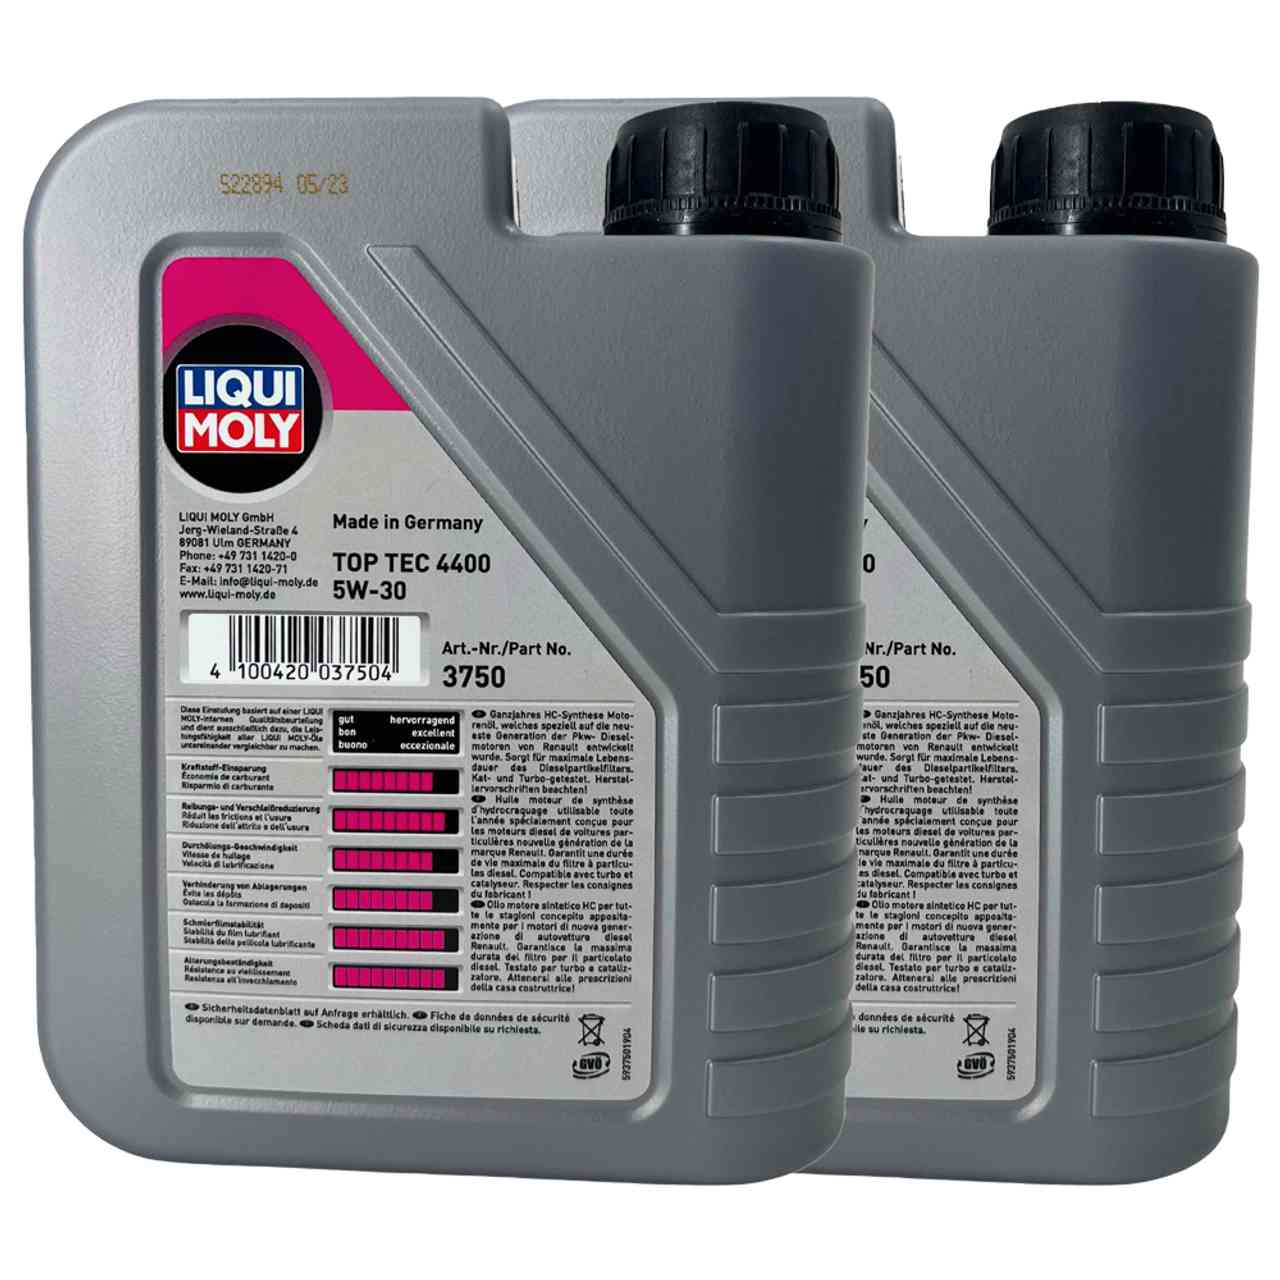 Liqui Moly Top Tec 4400 5W-30 2x1 Liter